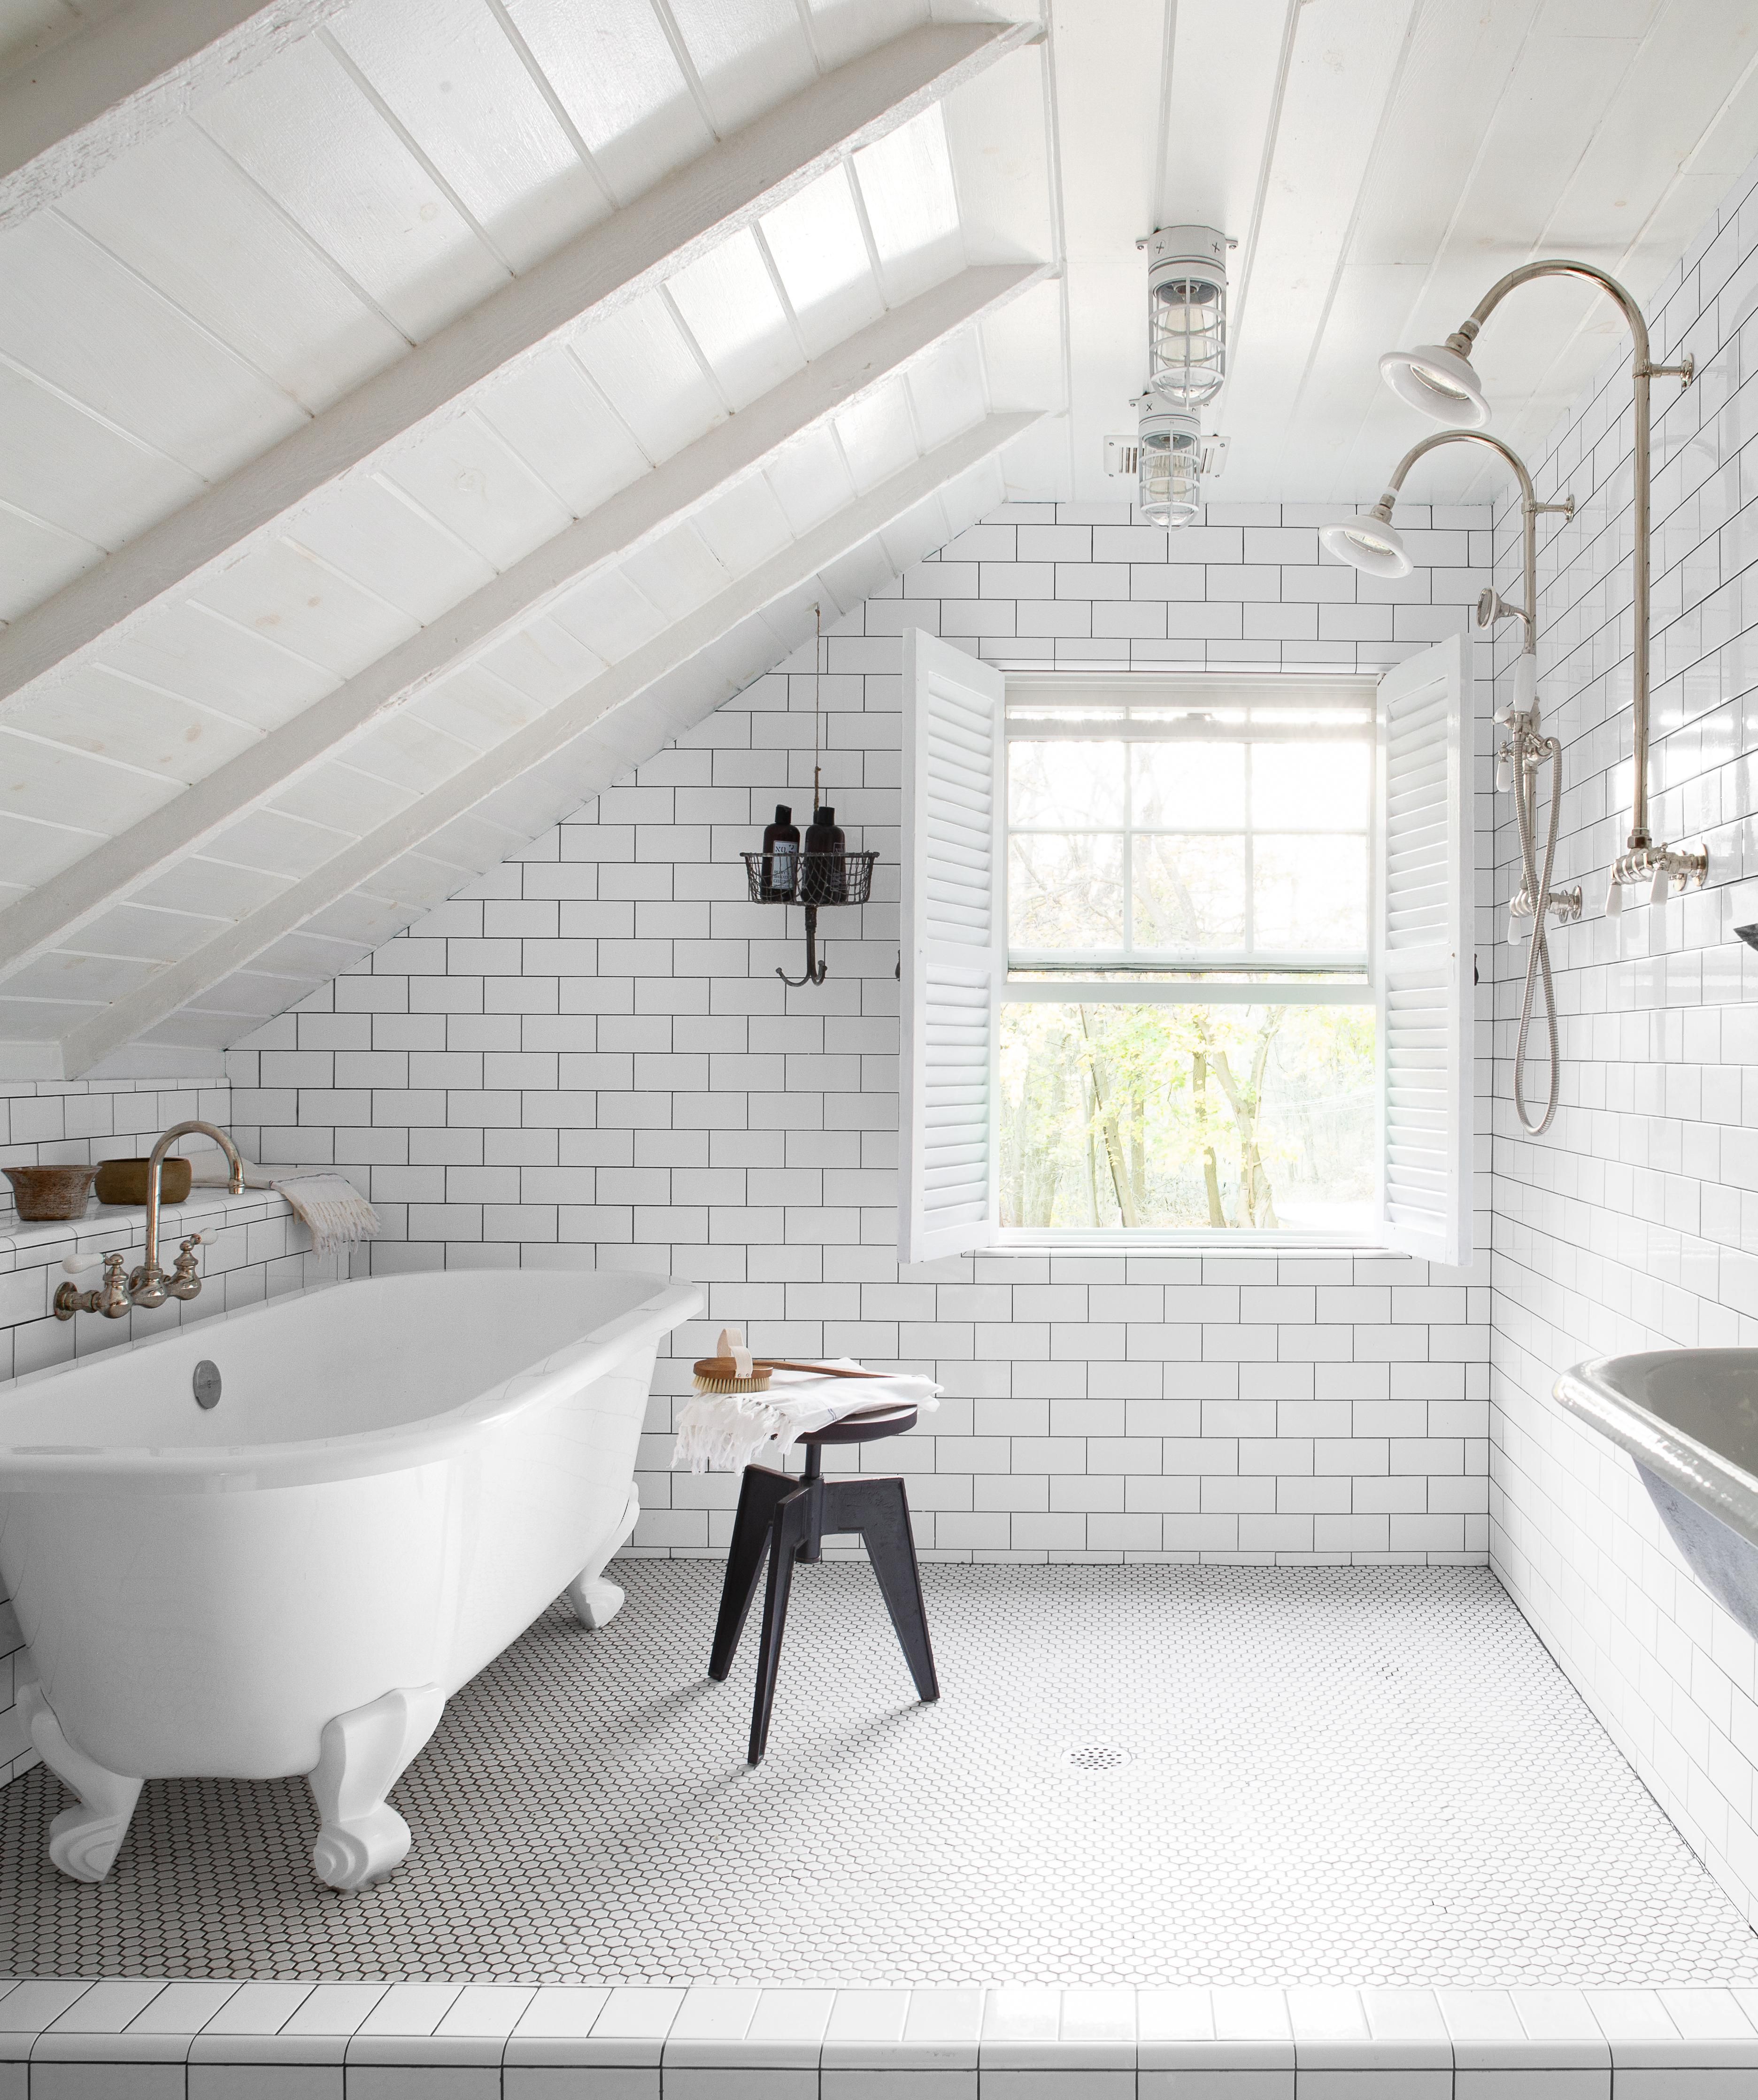 Clawfoot Tub Ideas For Your Bathroom, Claw Bathtub With Shower